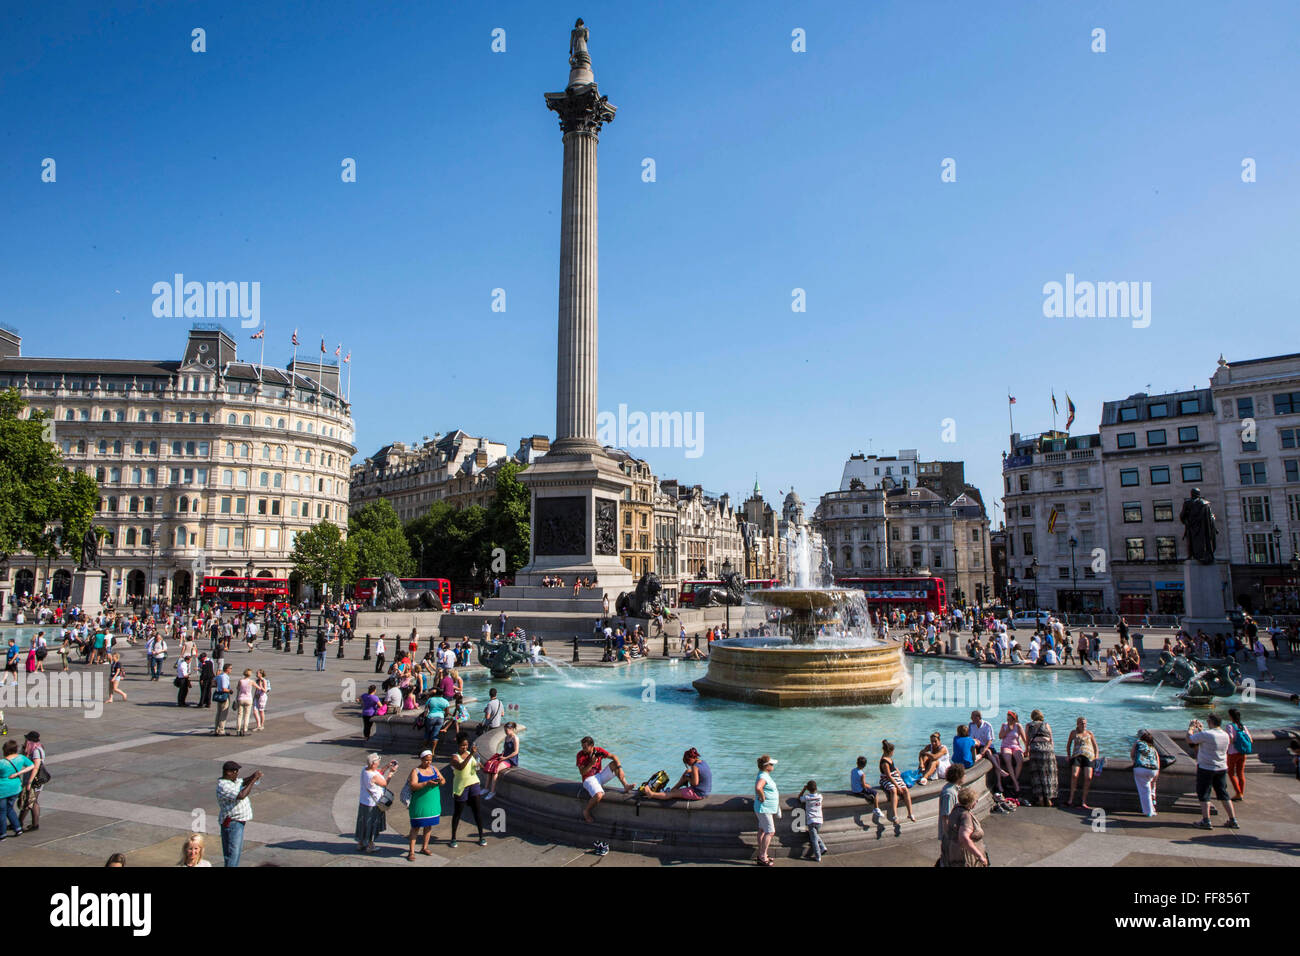 Turisti e londinesi godetevi una giornata d'estate attorno alle fontane di Trafalgar Square a Londra. Foto Stock